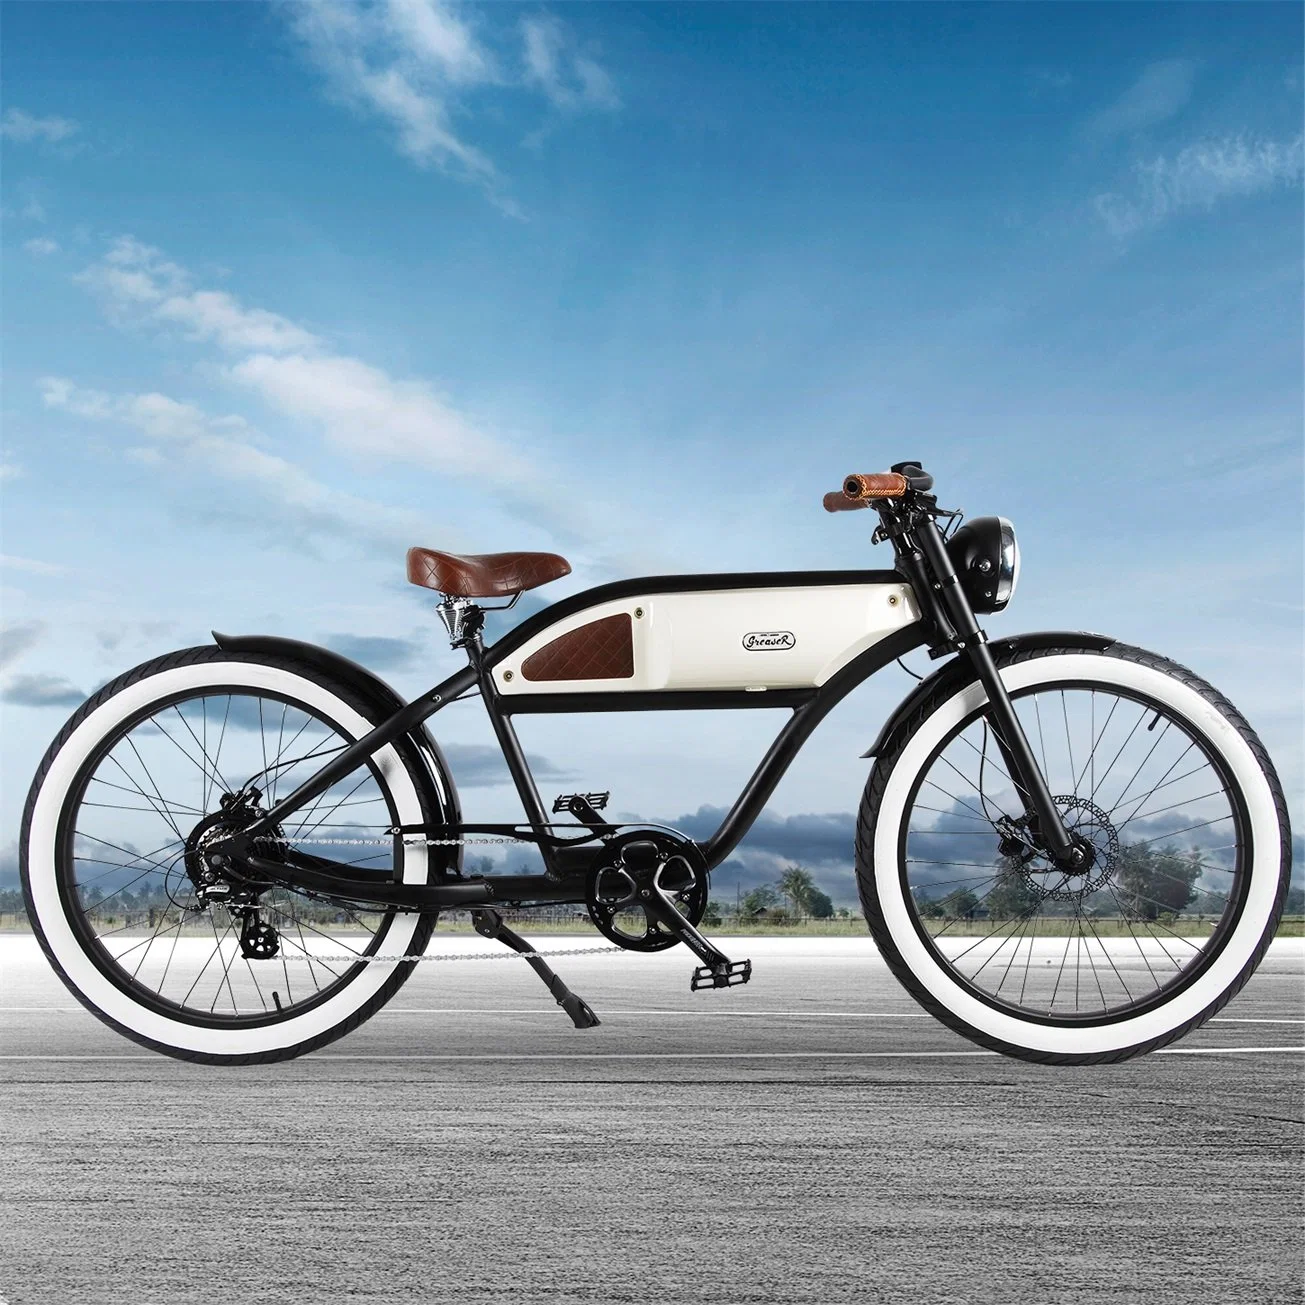 الدراجة الكهربائية En15194 بقدرة 350 واط ودراجة كهربائية مقاس 26 بوصة مع شهادة CE